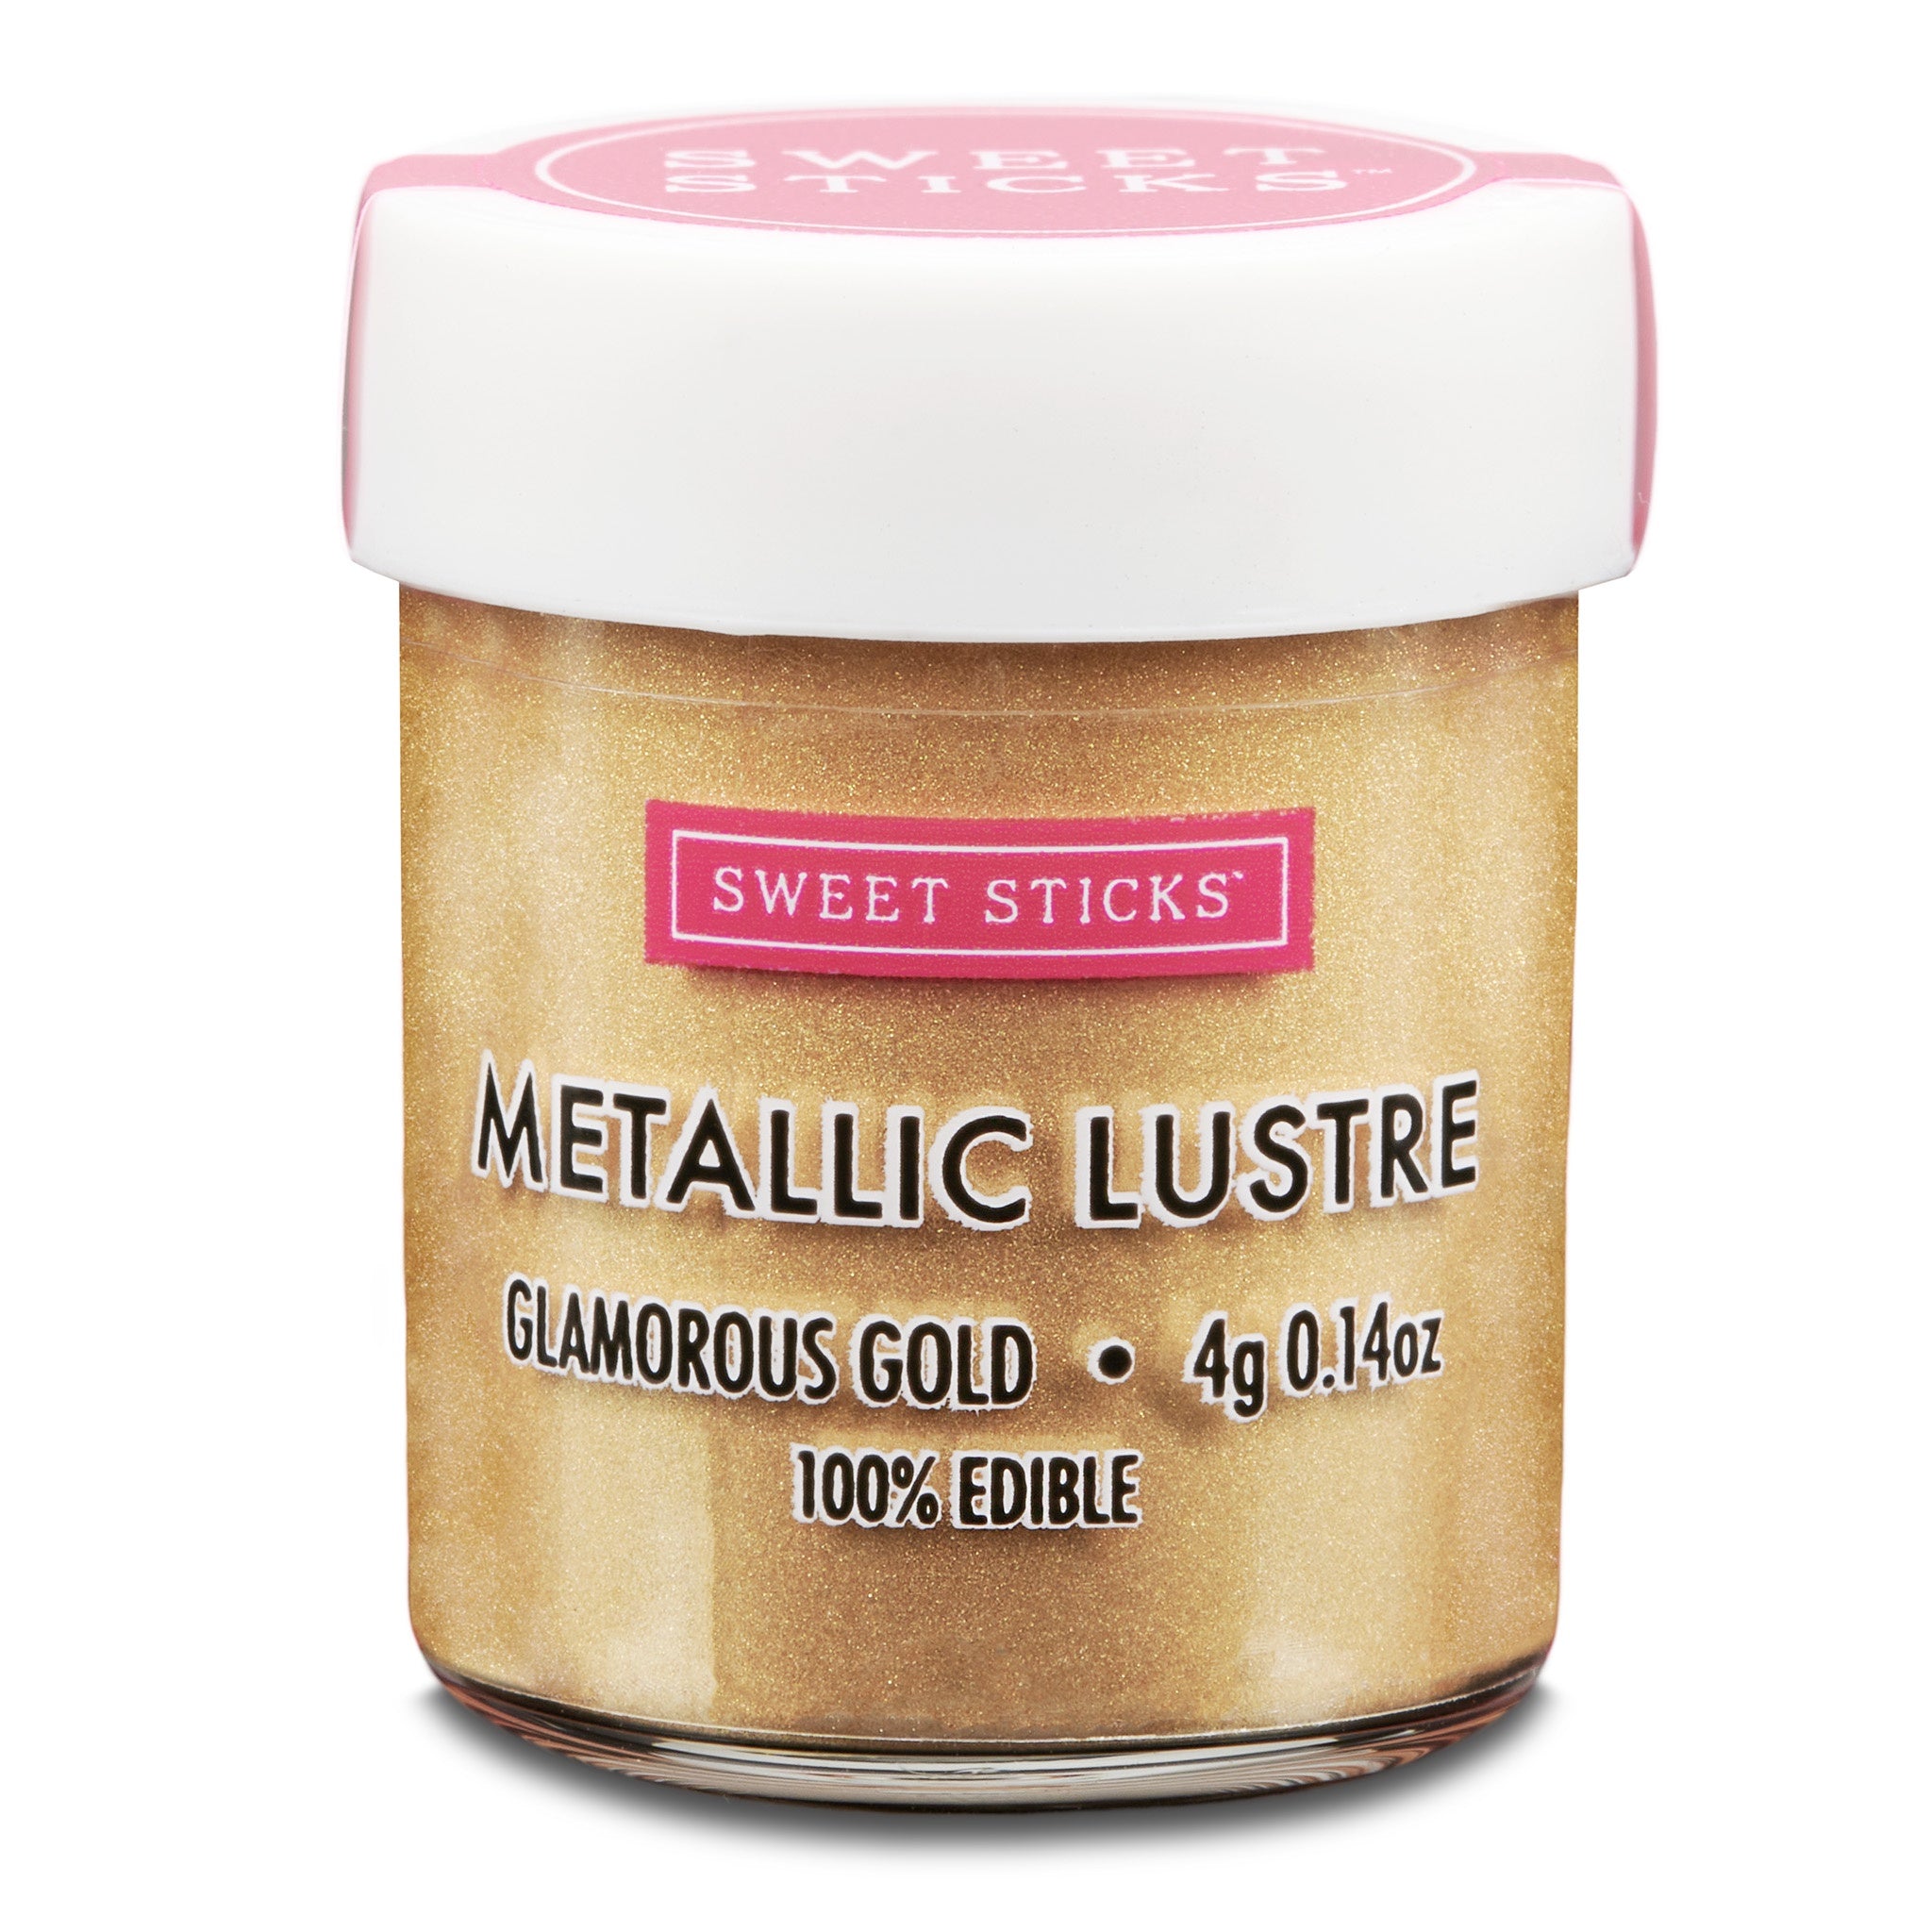 Sweet Sticks Metallic Lustre 4g - Glamorous Gold